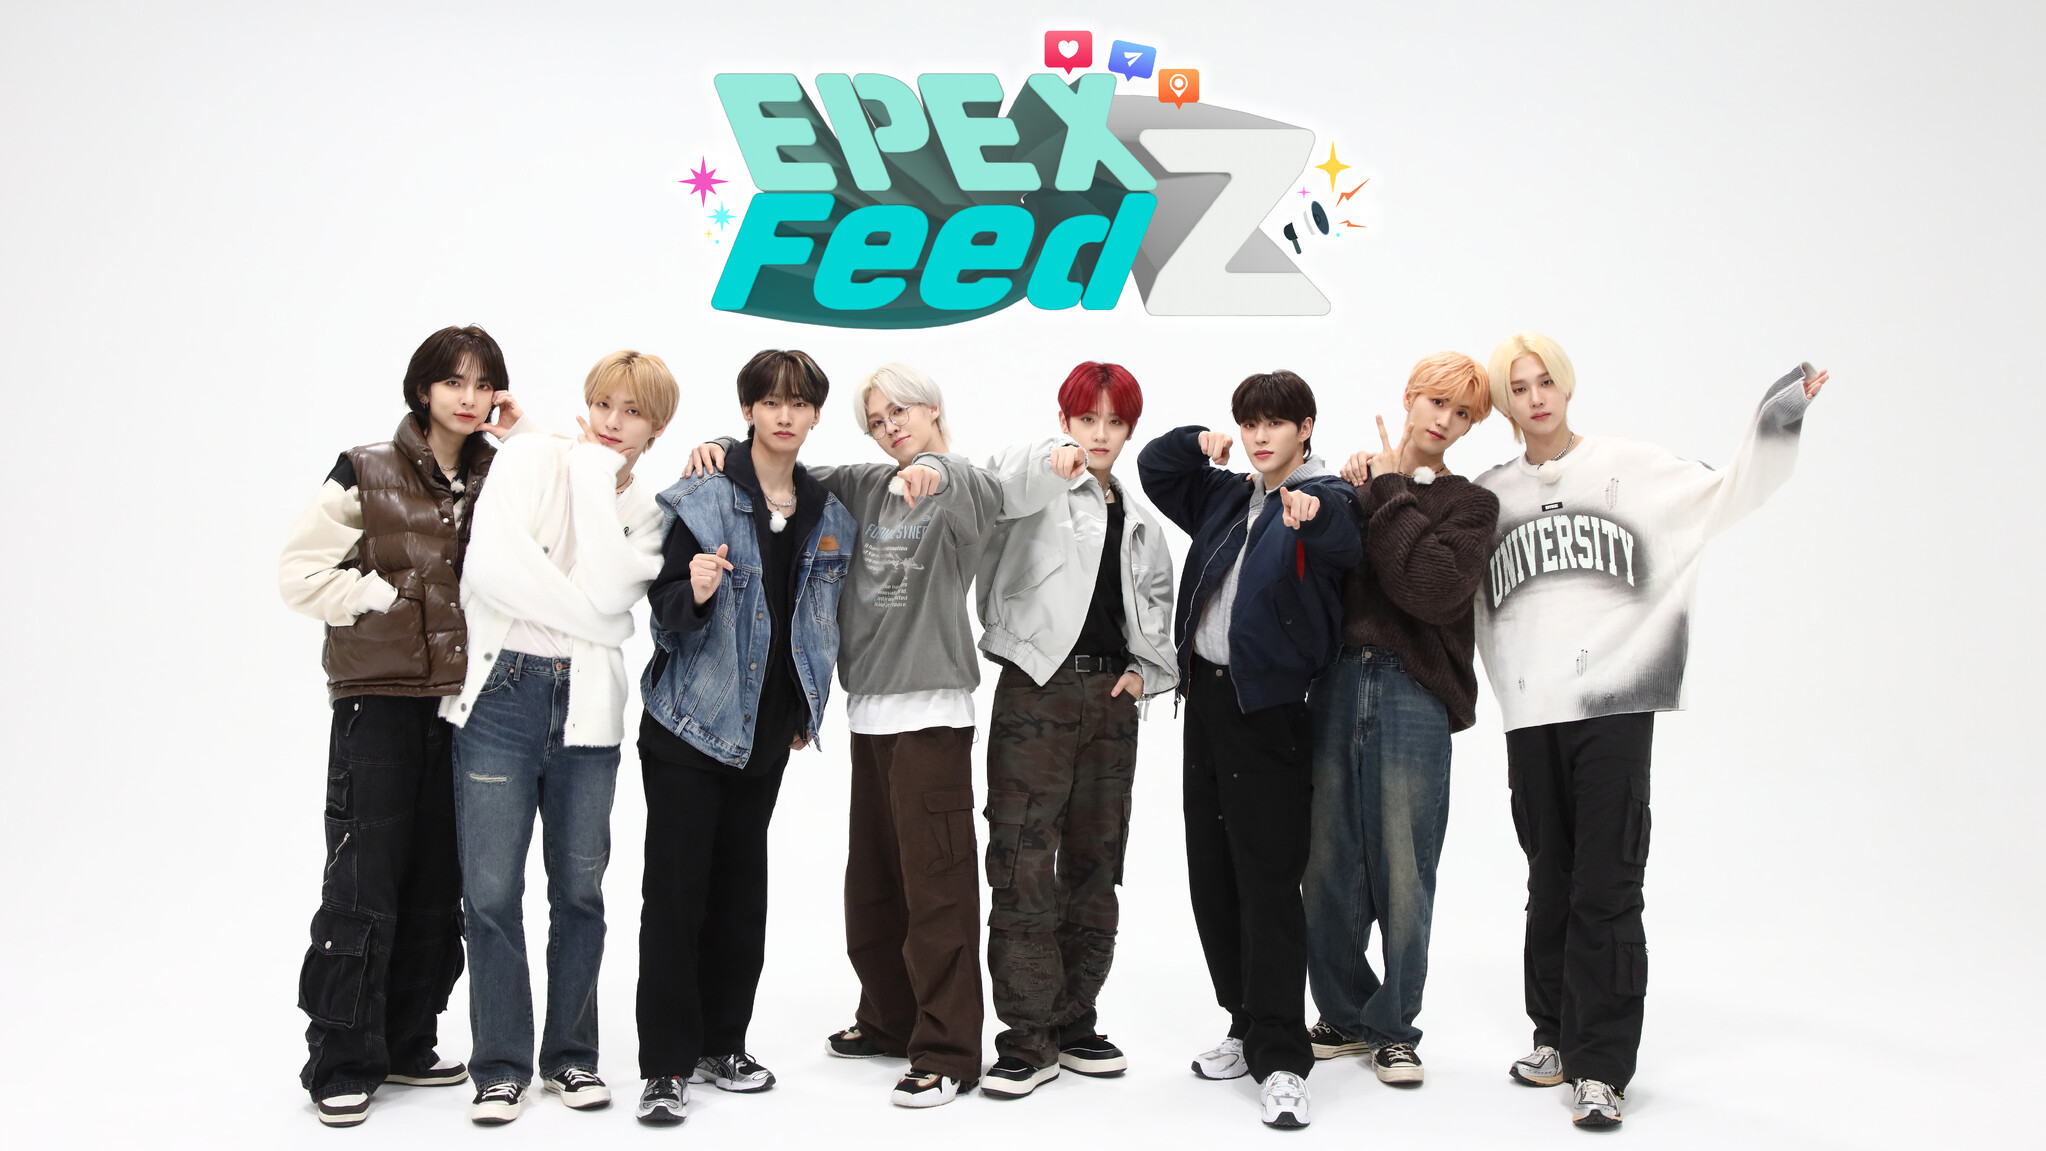 Mnet Japan의 오리지널 콘텐츠 EPEX, 한국 Z세대의 최신 트렌드를 발견하다!  “EPEX FeedZ”가 12월 21일(목) 일본 최초 방송 및 전달 결정!  ｜엠넷 보도자료